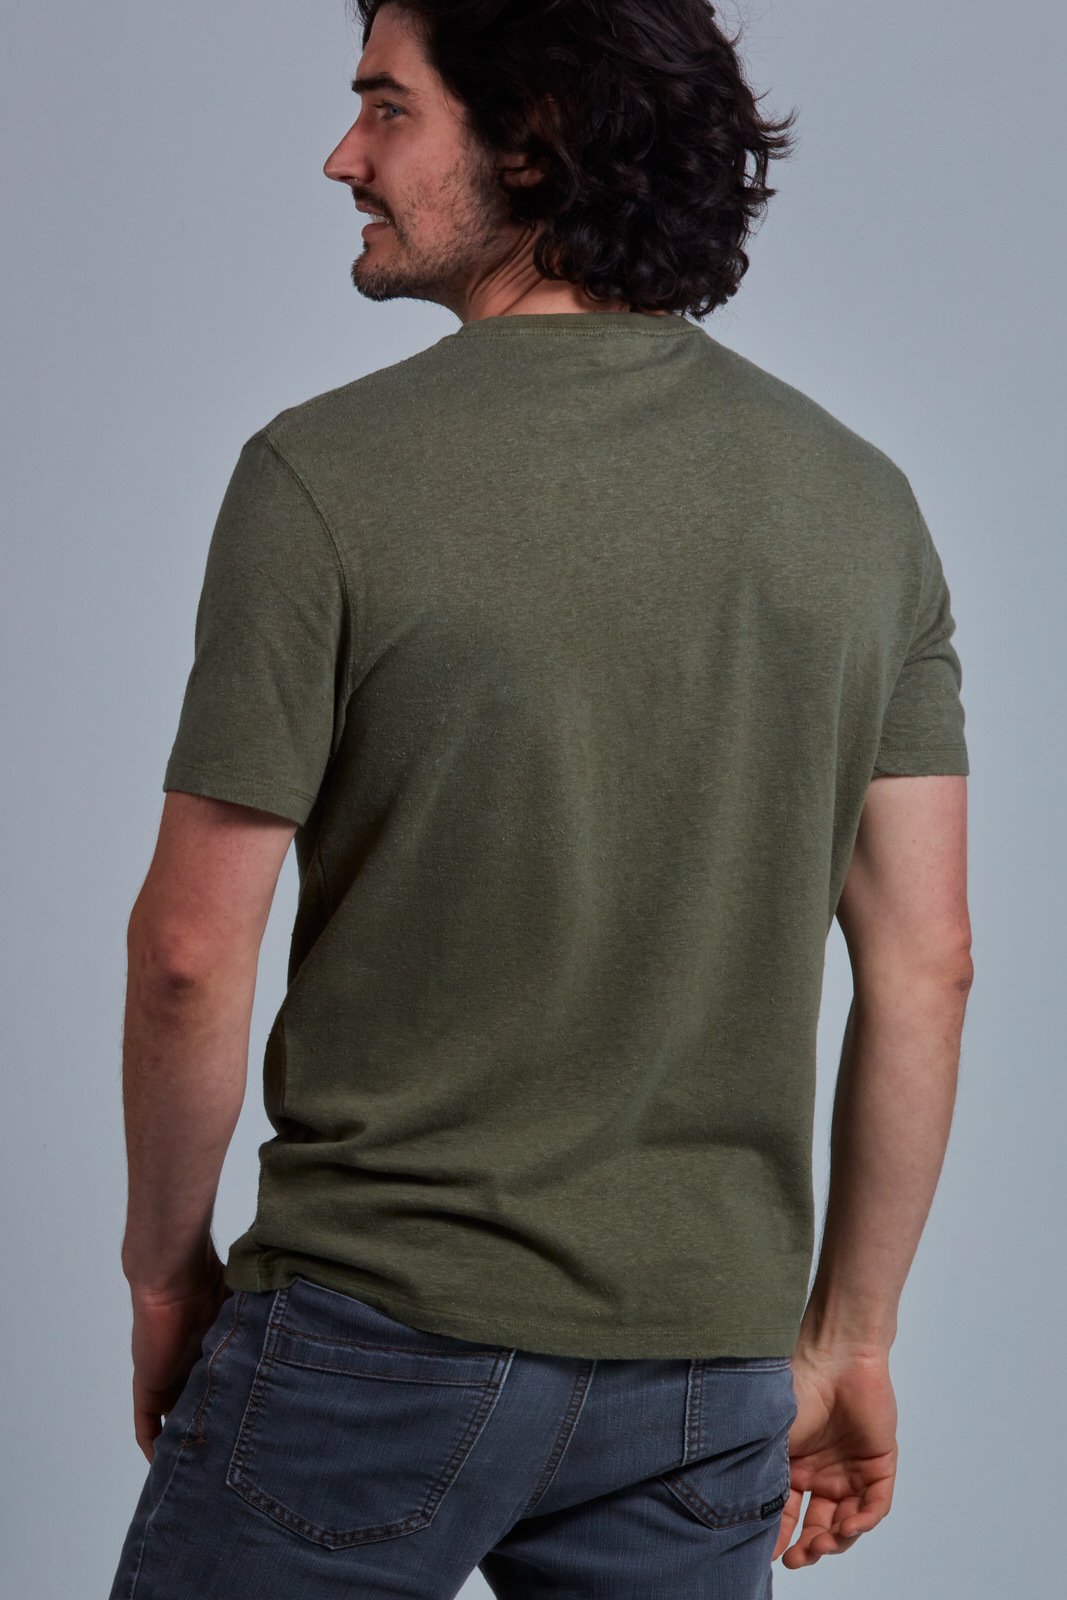 Lightweight Hemp - Organic Cotton T-Shirt